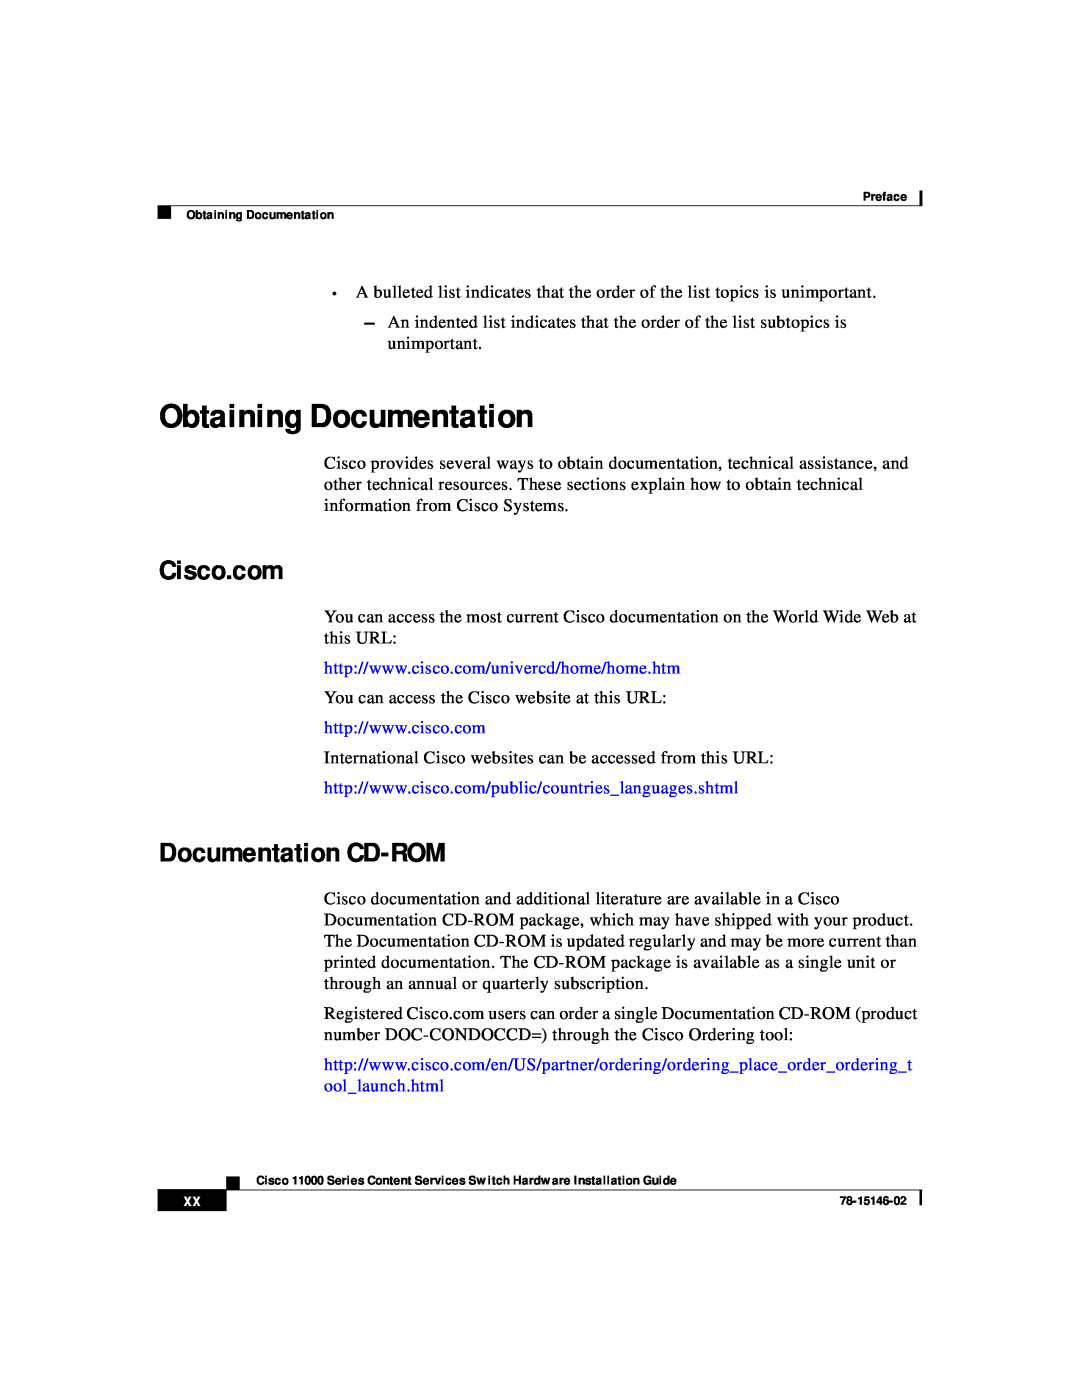 Cisco Systems 11000 Series manual Obtaining Documentation, Cisco.com, Documentation CD-ROM 